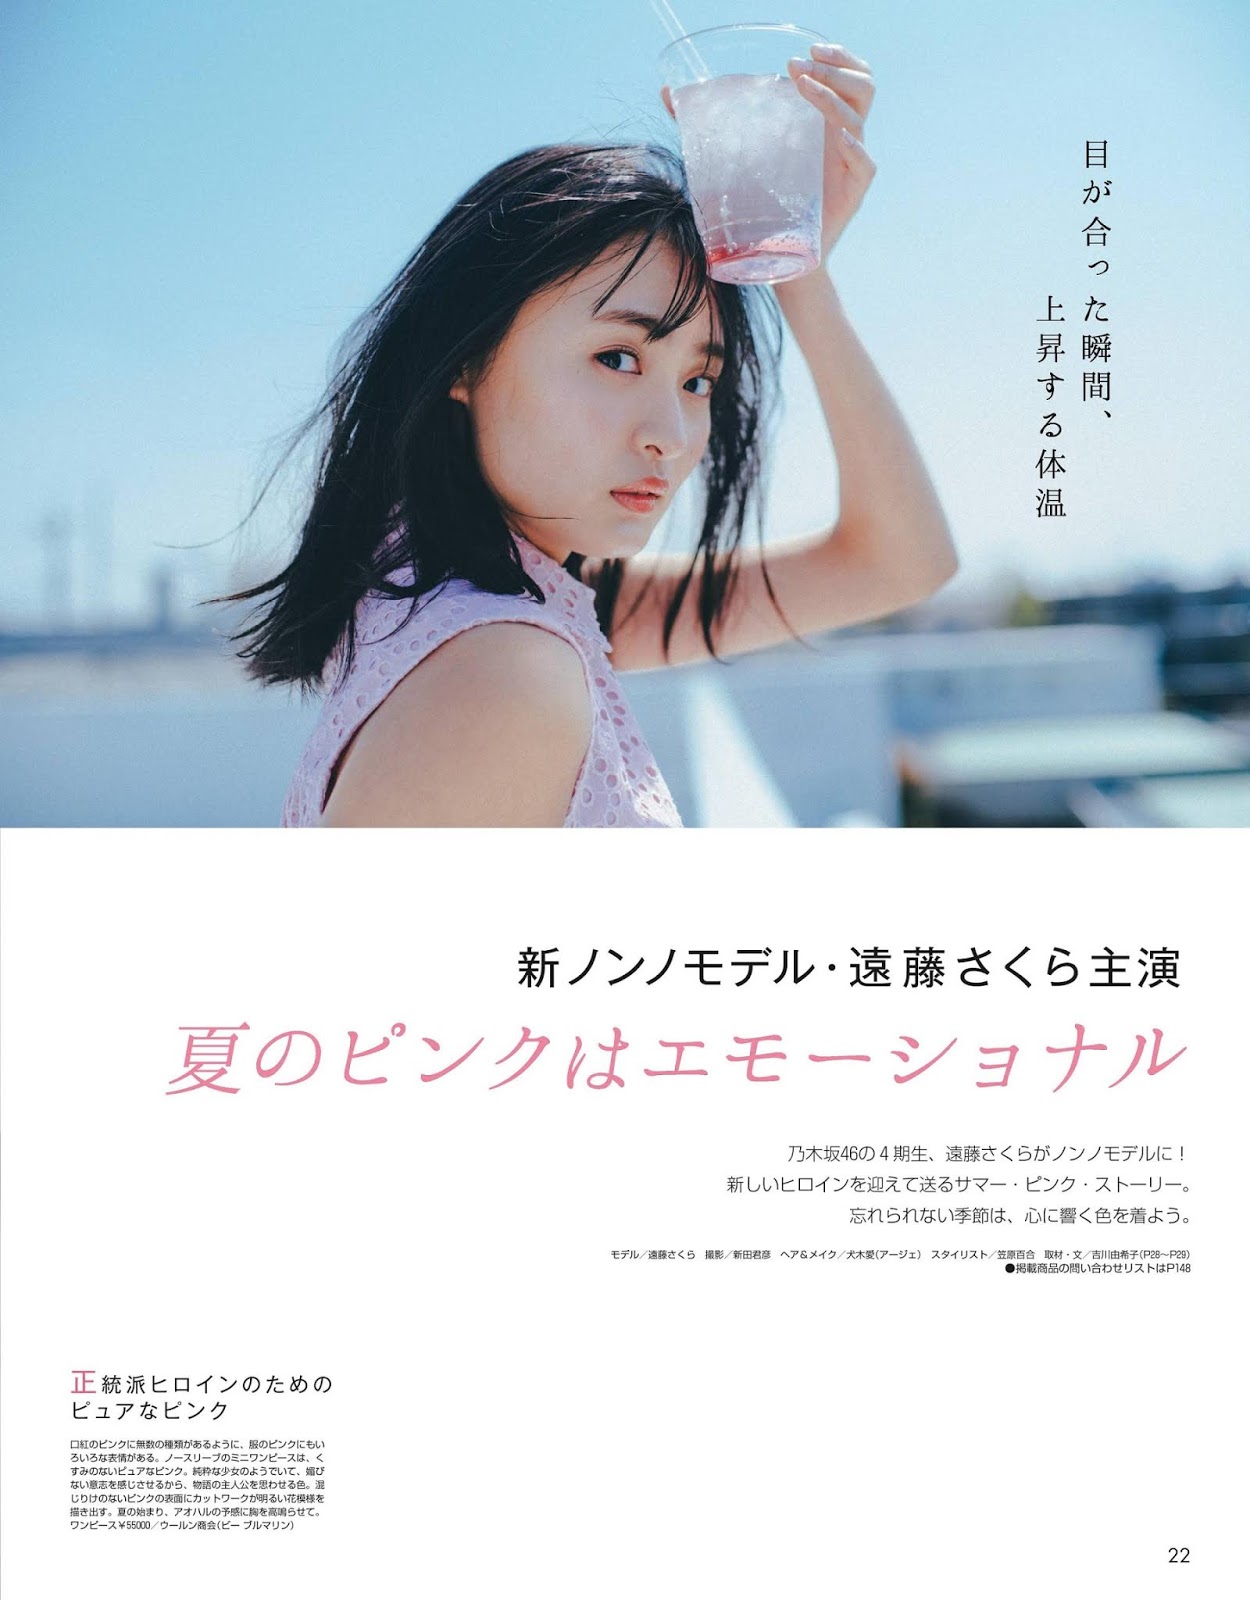 遠藤さくら  Non_no Magazine 2020.07 - 亞洲美女 -